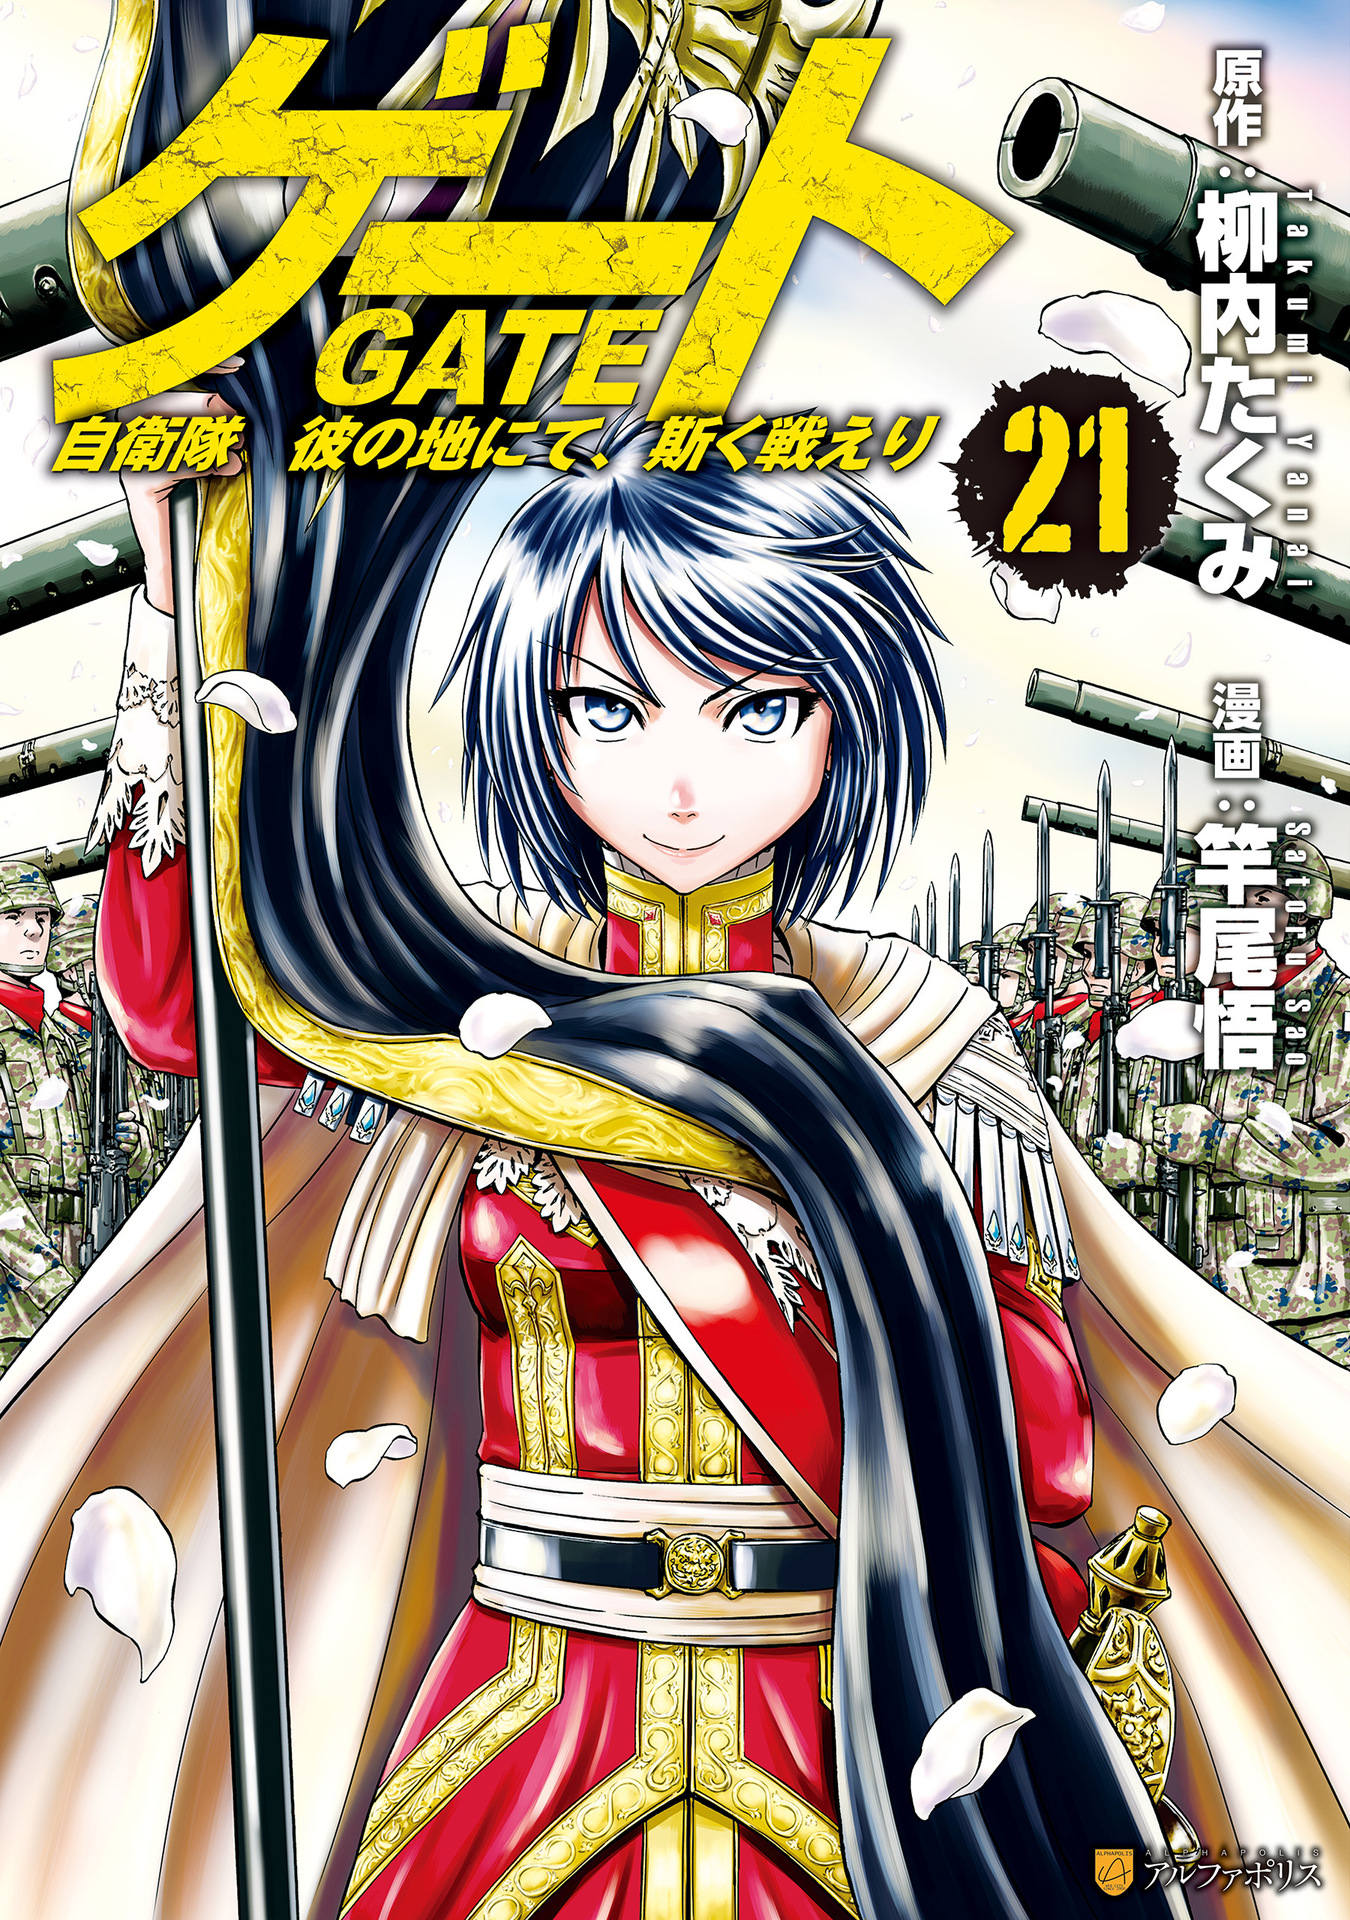 GATE: Jieitai Kanochi nite, Kaku Tatakaeri 2 (Gate 2) · AniList